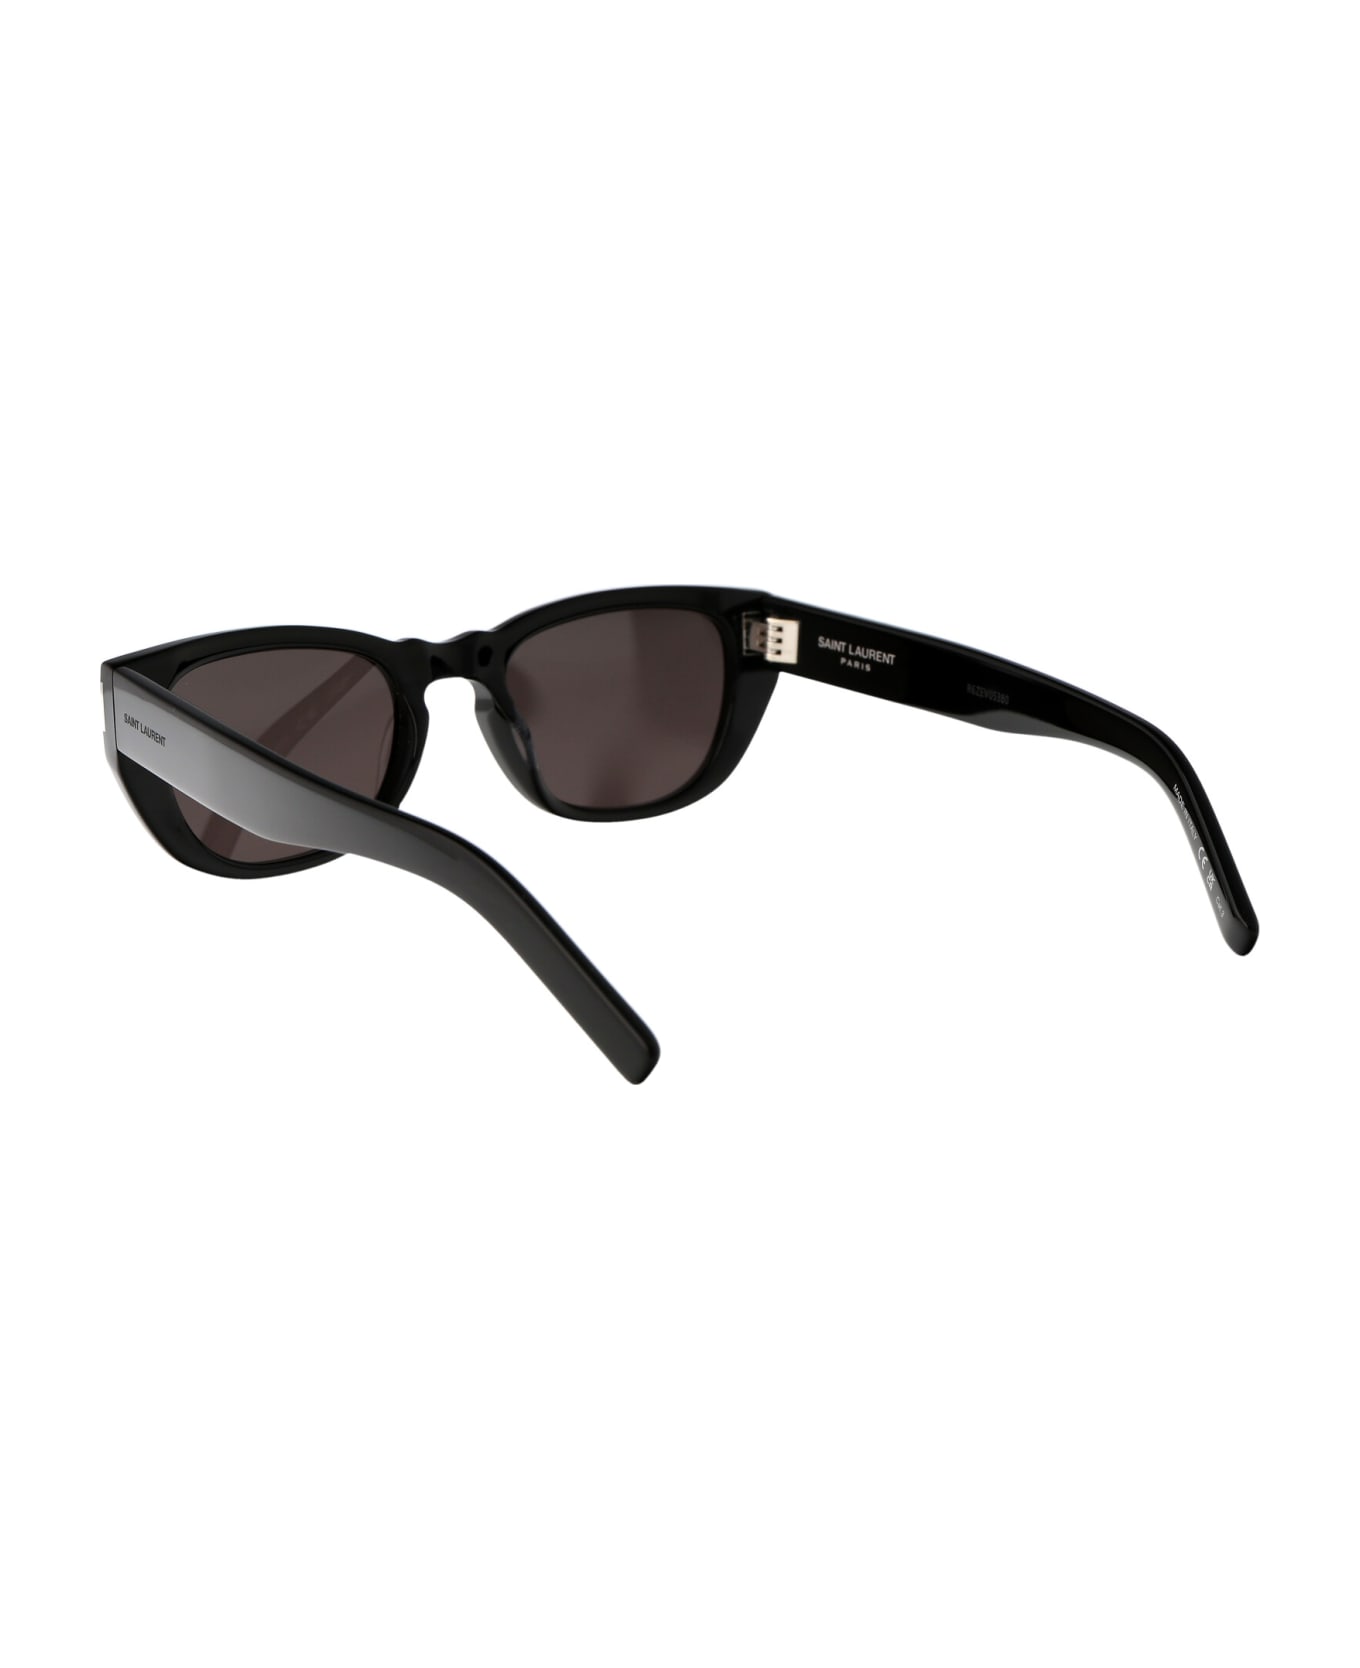 Saint Laurent Eyewear Sl 601 Sunglasses - 001 BLACK BLACK BLACK